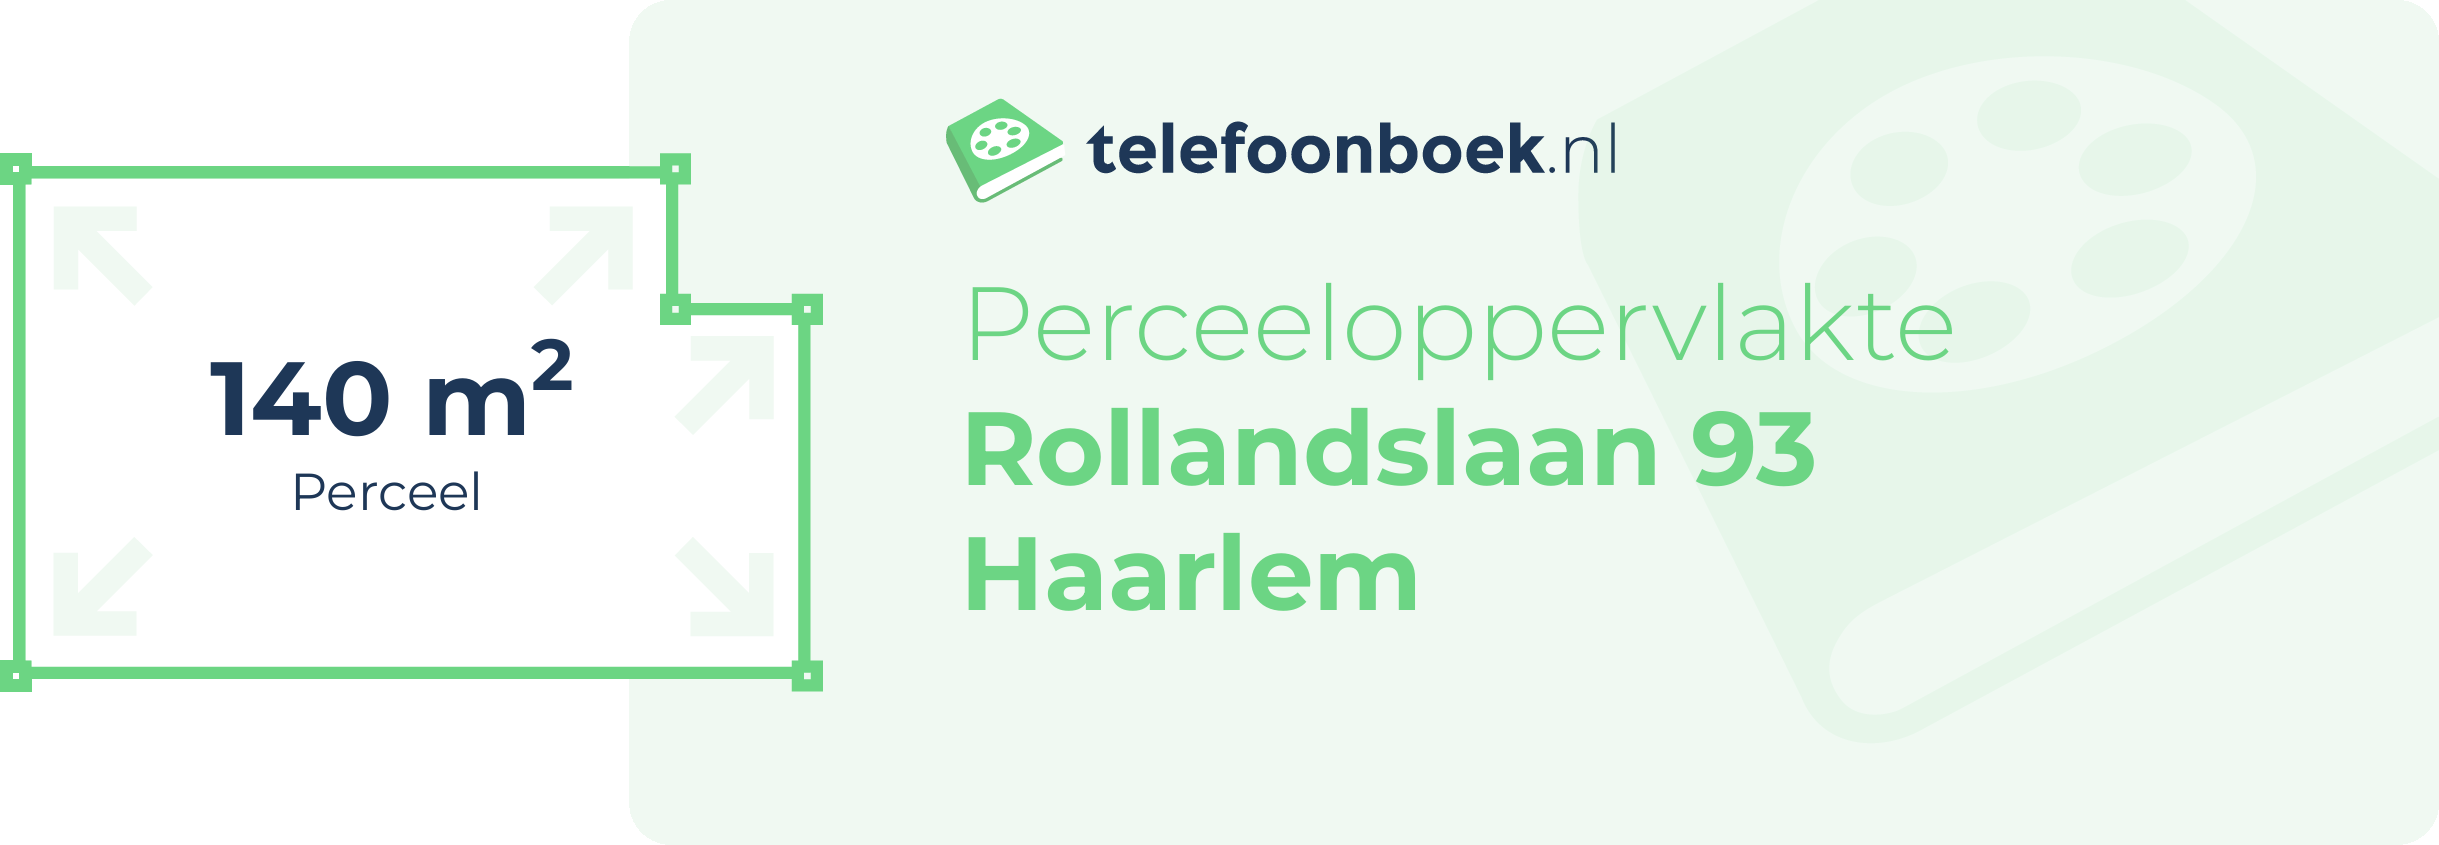 Perceeloppervlakte Rollandslaan 93 Haarlem